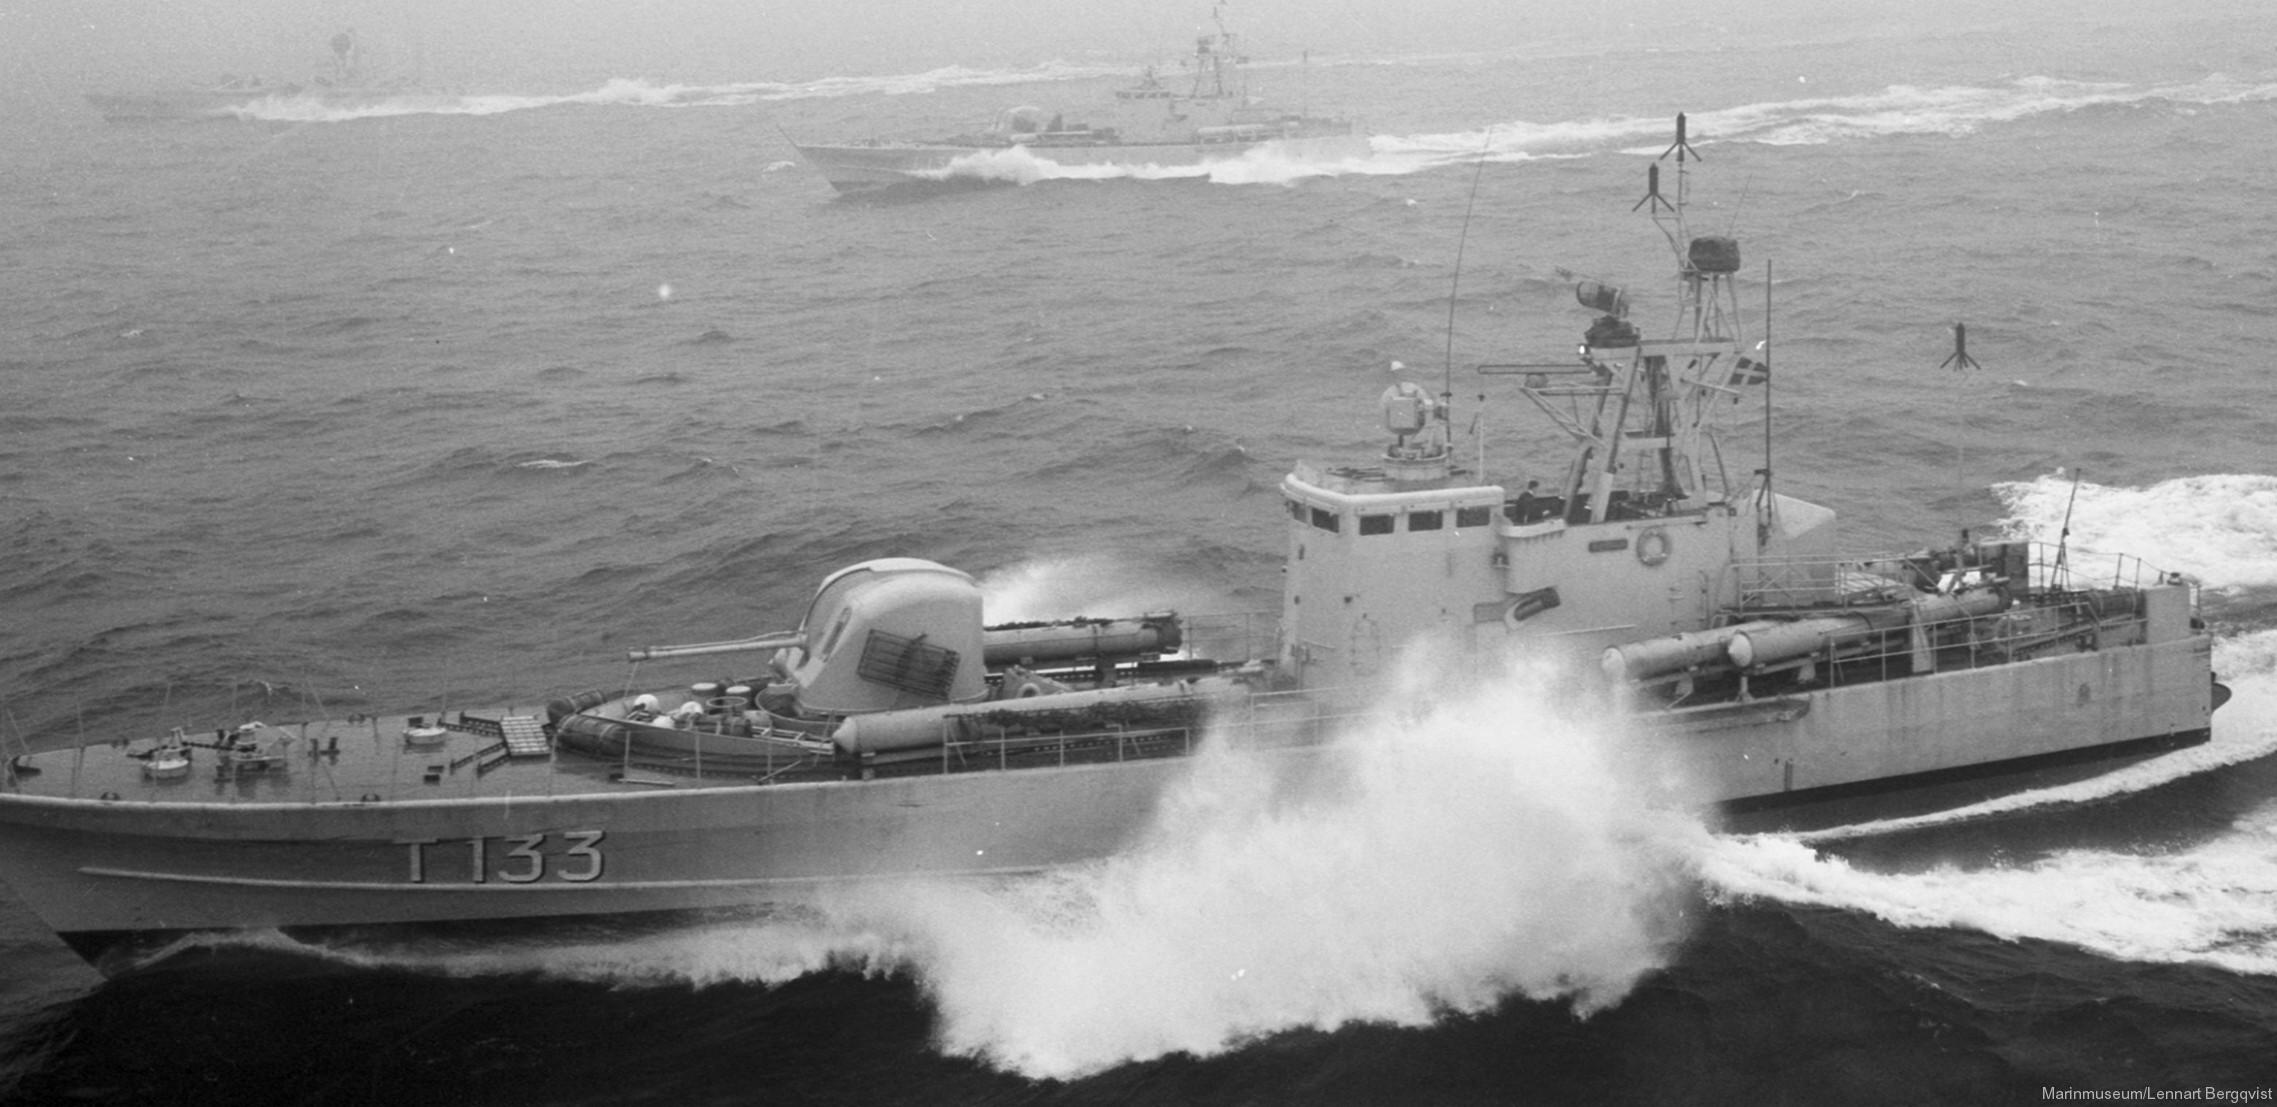 t133 norrtälje hswms hms norrköping class fast attack craft torpedo missile patrol boat swedish navy svenska marinen 13